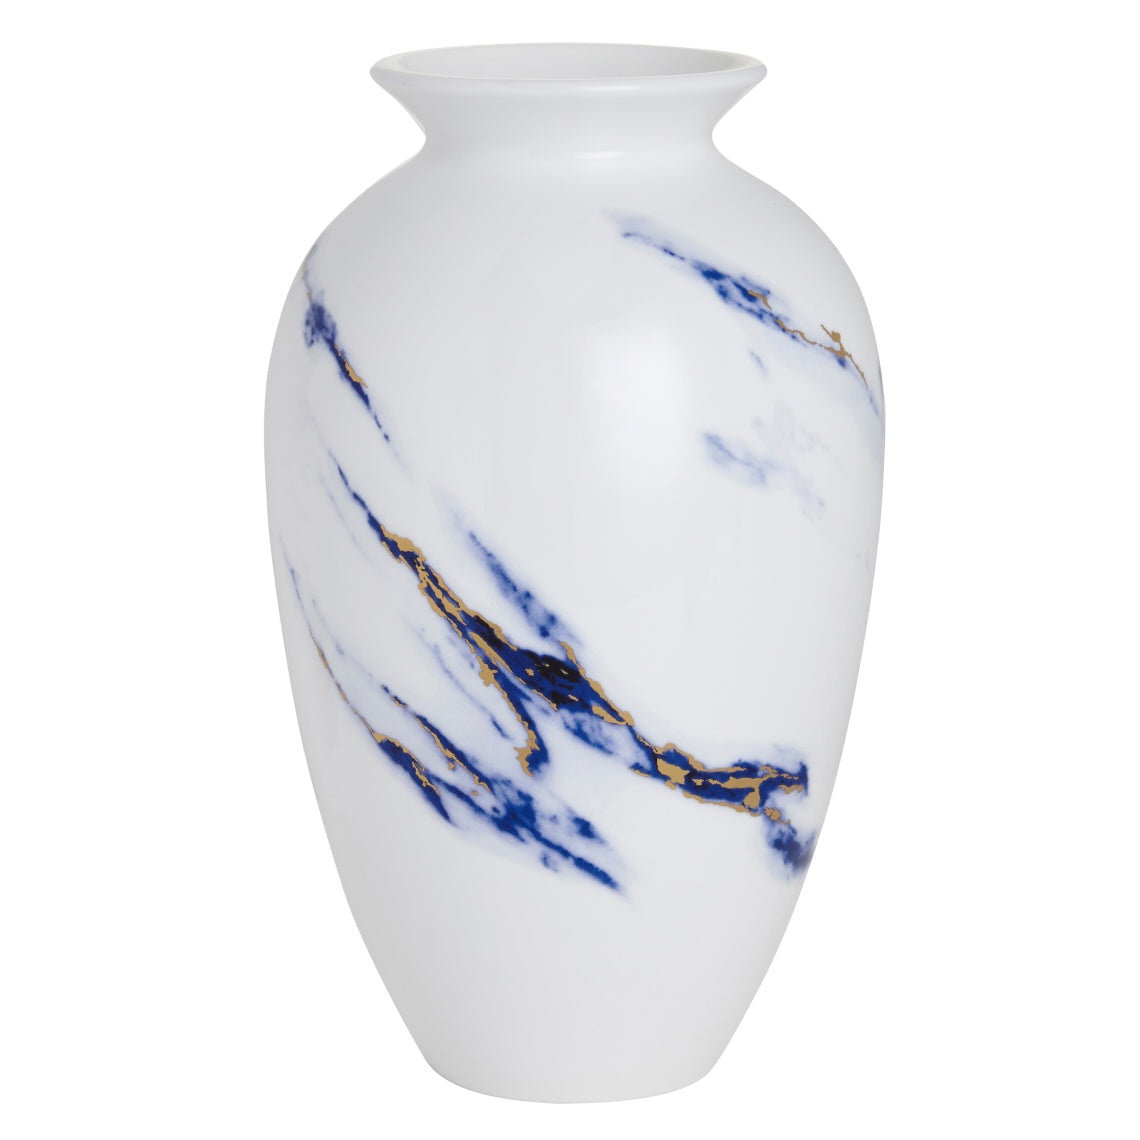 Prouna Marble Azure 9-1/2" Urn Vase White Background Photo